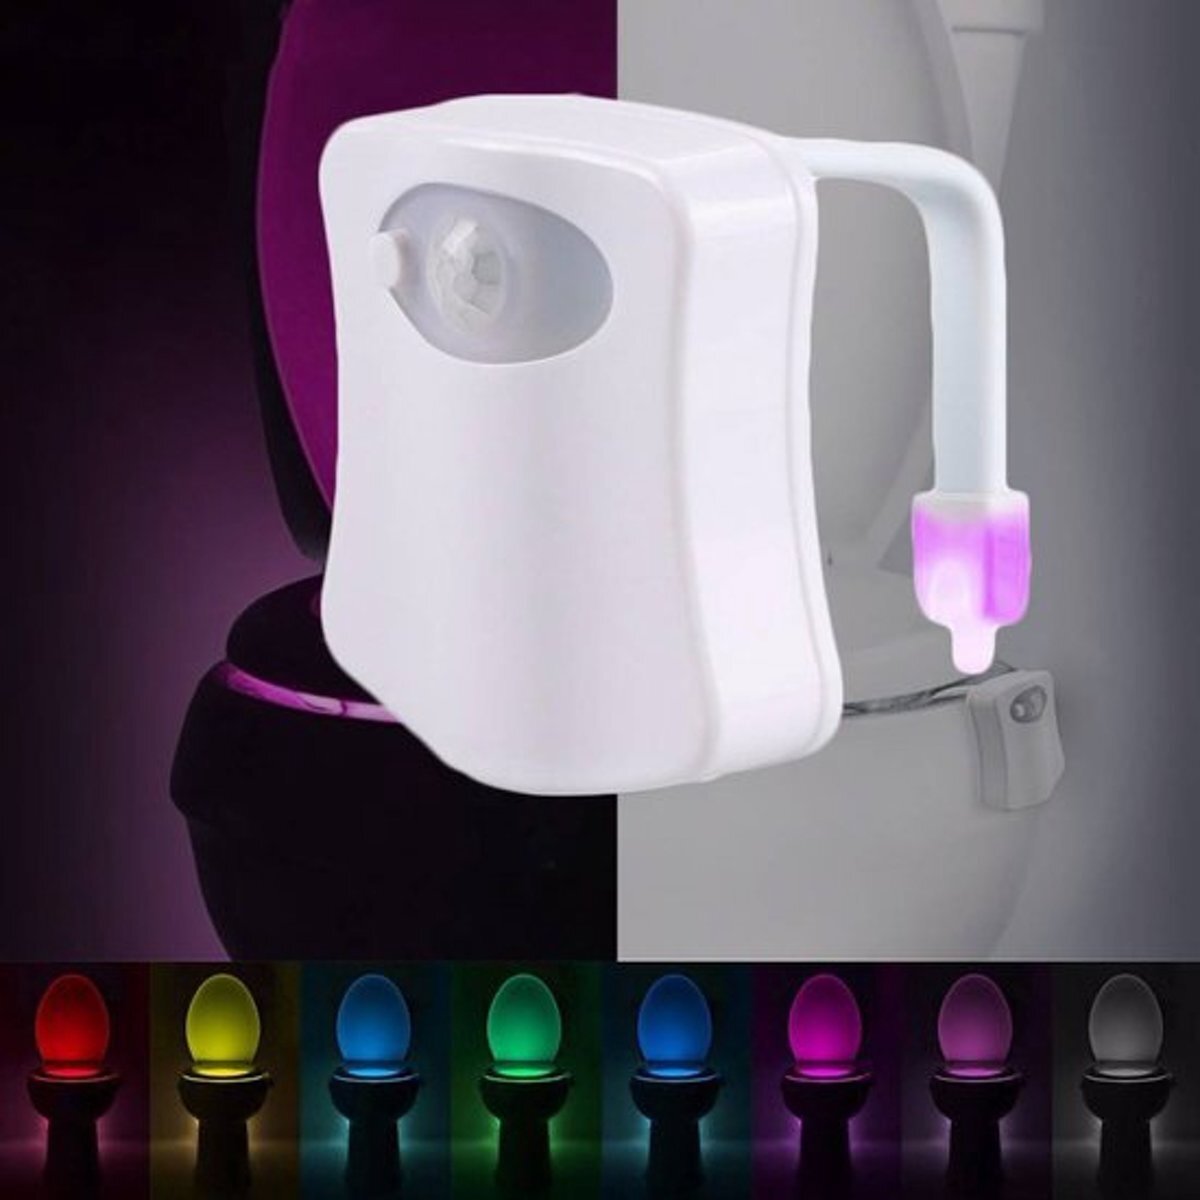 Generik Toiletpotverlichting Automatisch Led licht voor de WC in 8 veranderende kleuren